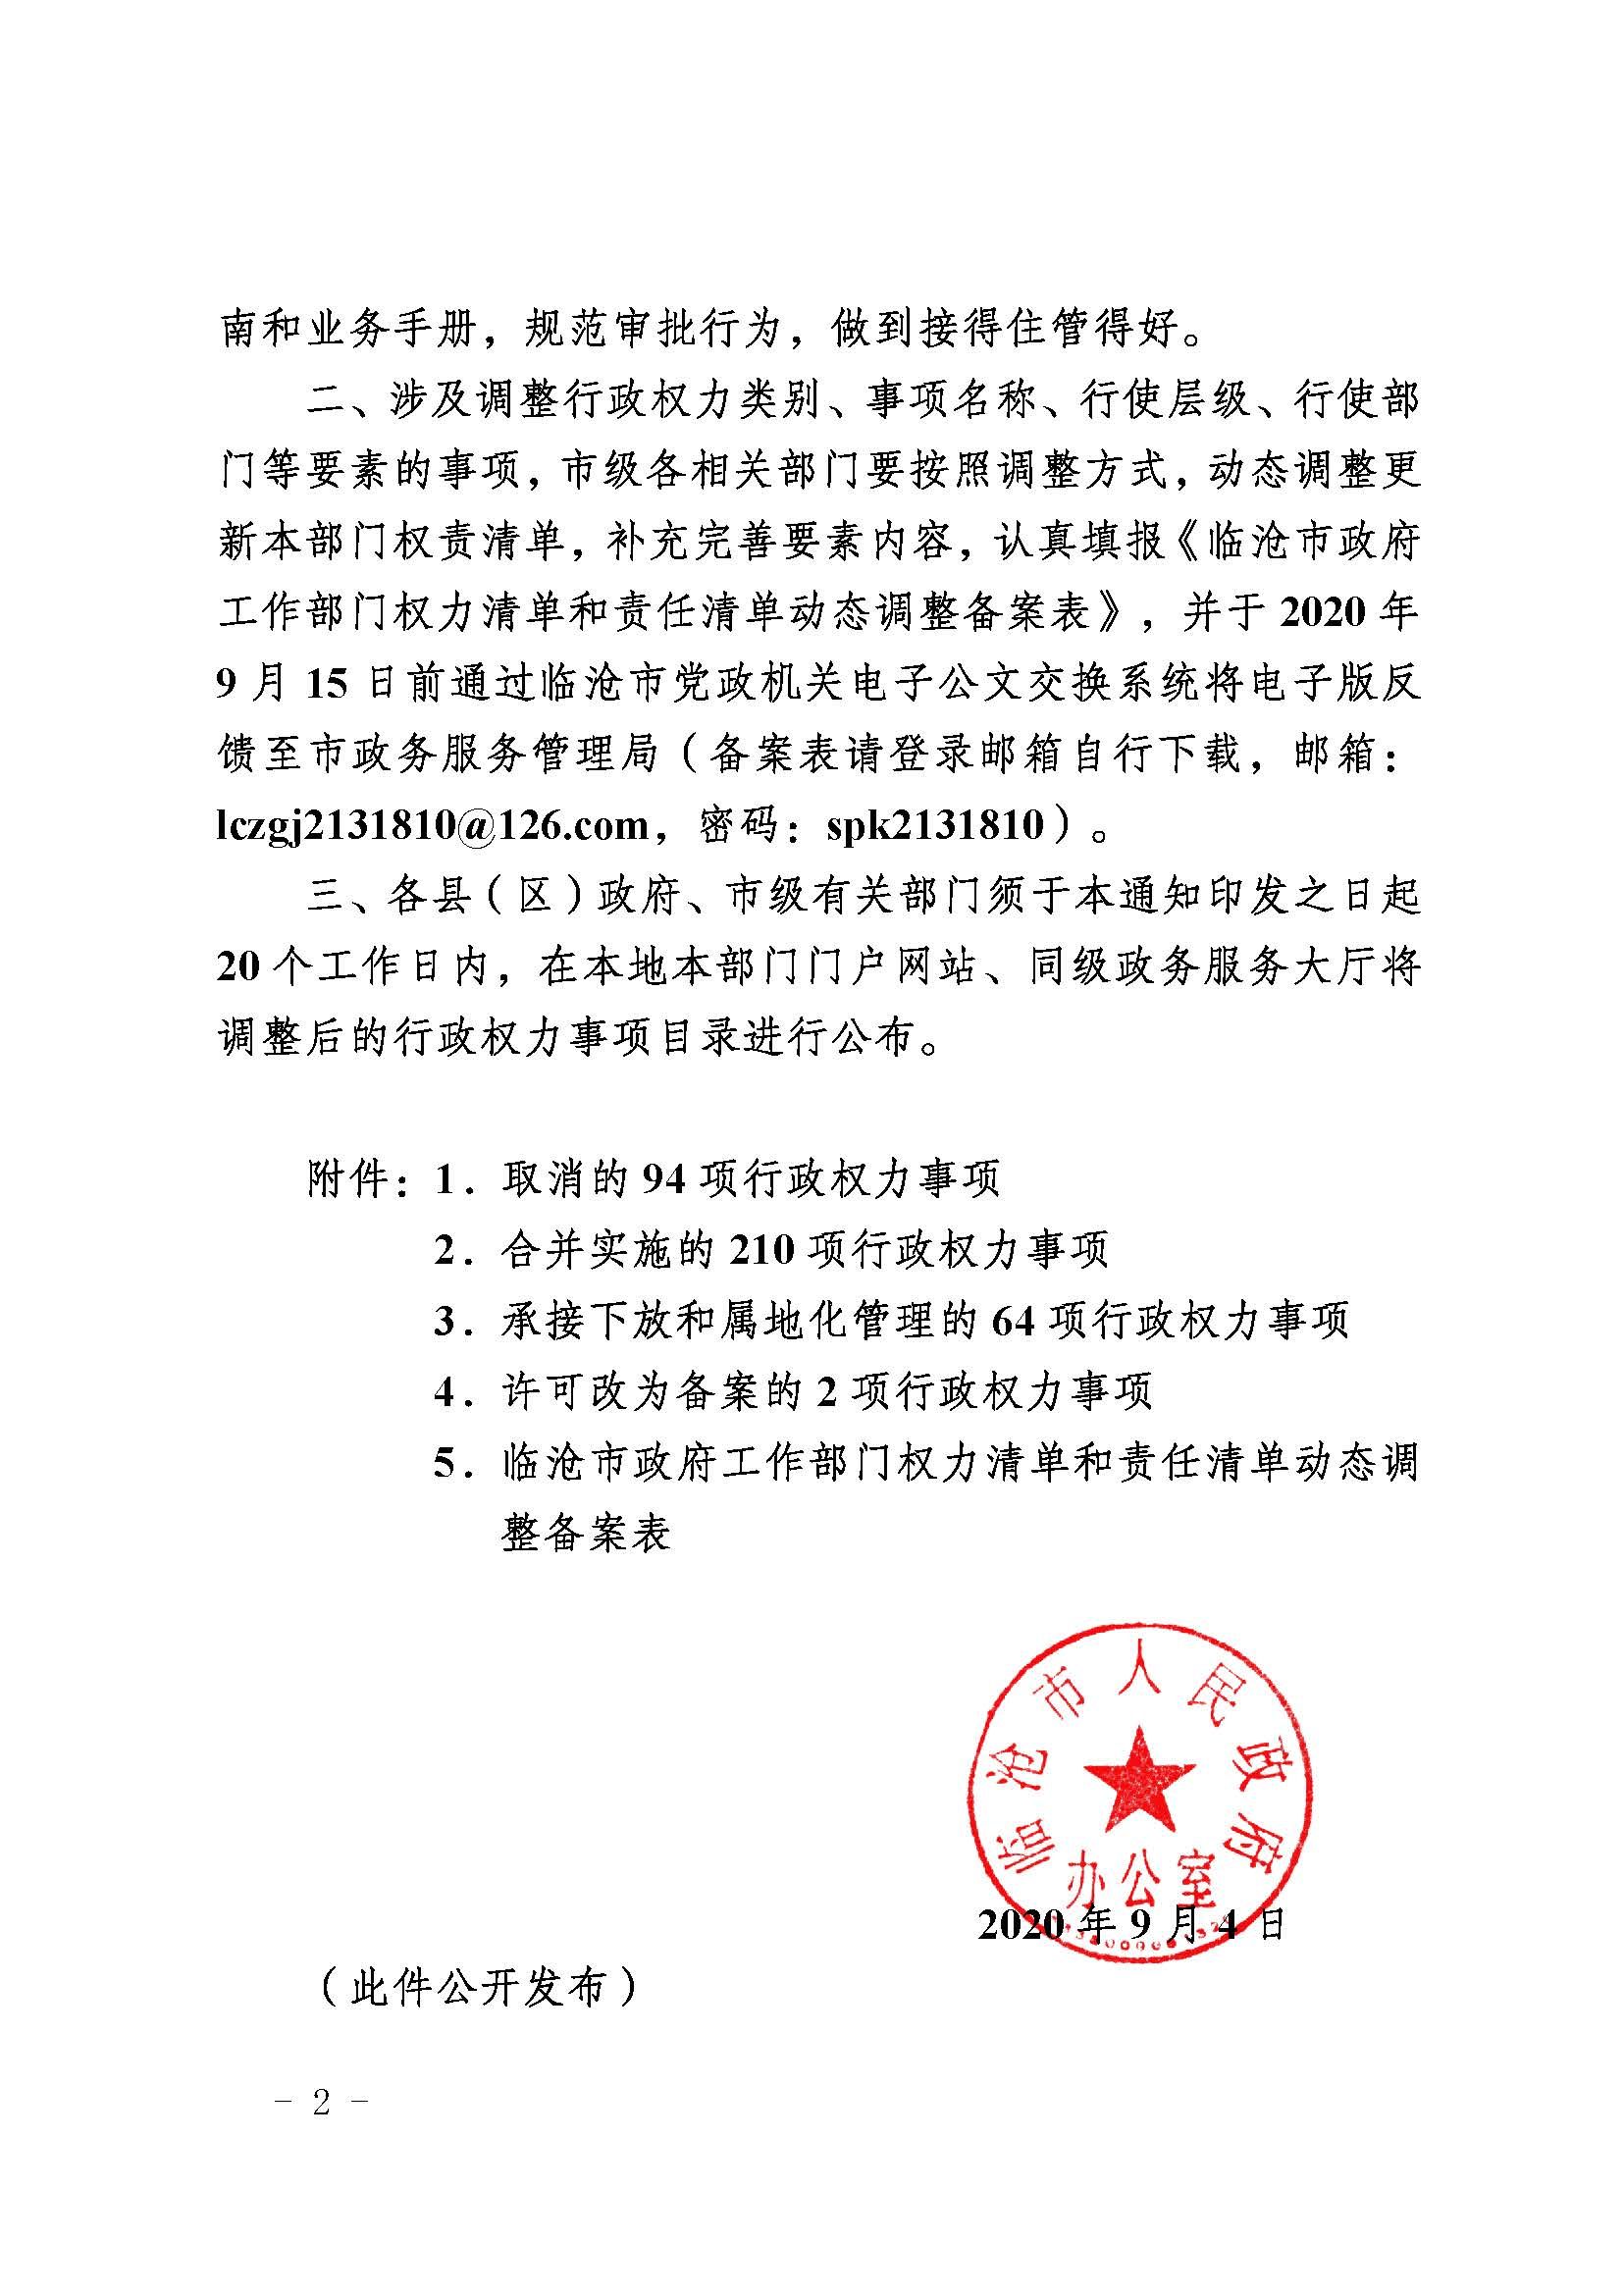 临沧市人民政府办公室关于做好调整370项行政权力事项工作的通知_页面_02